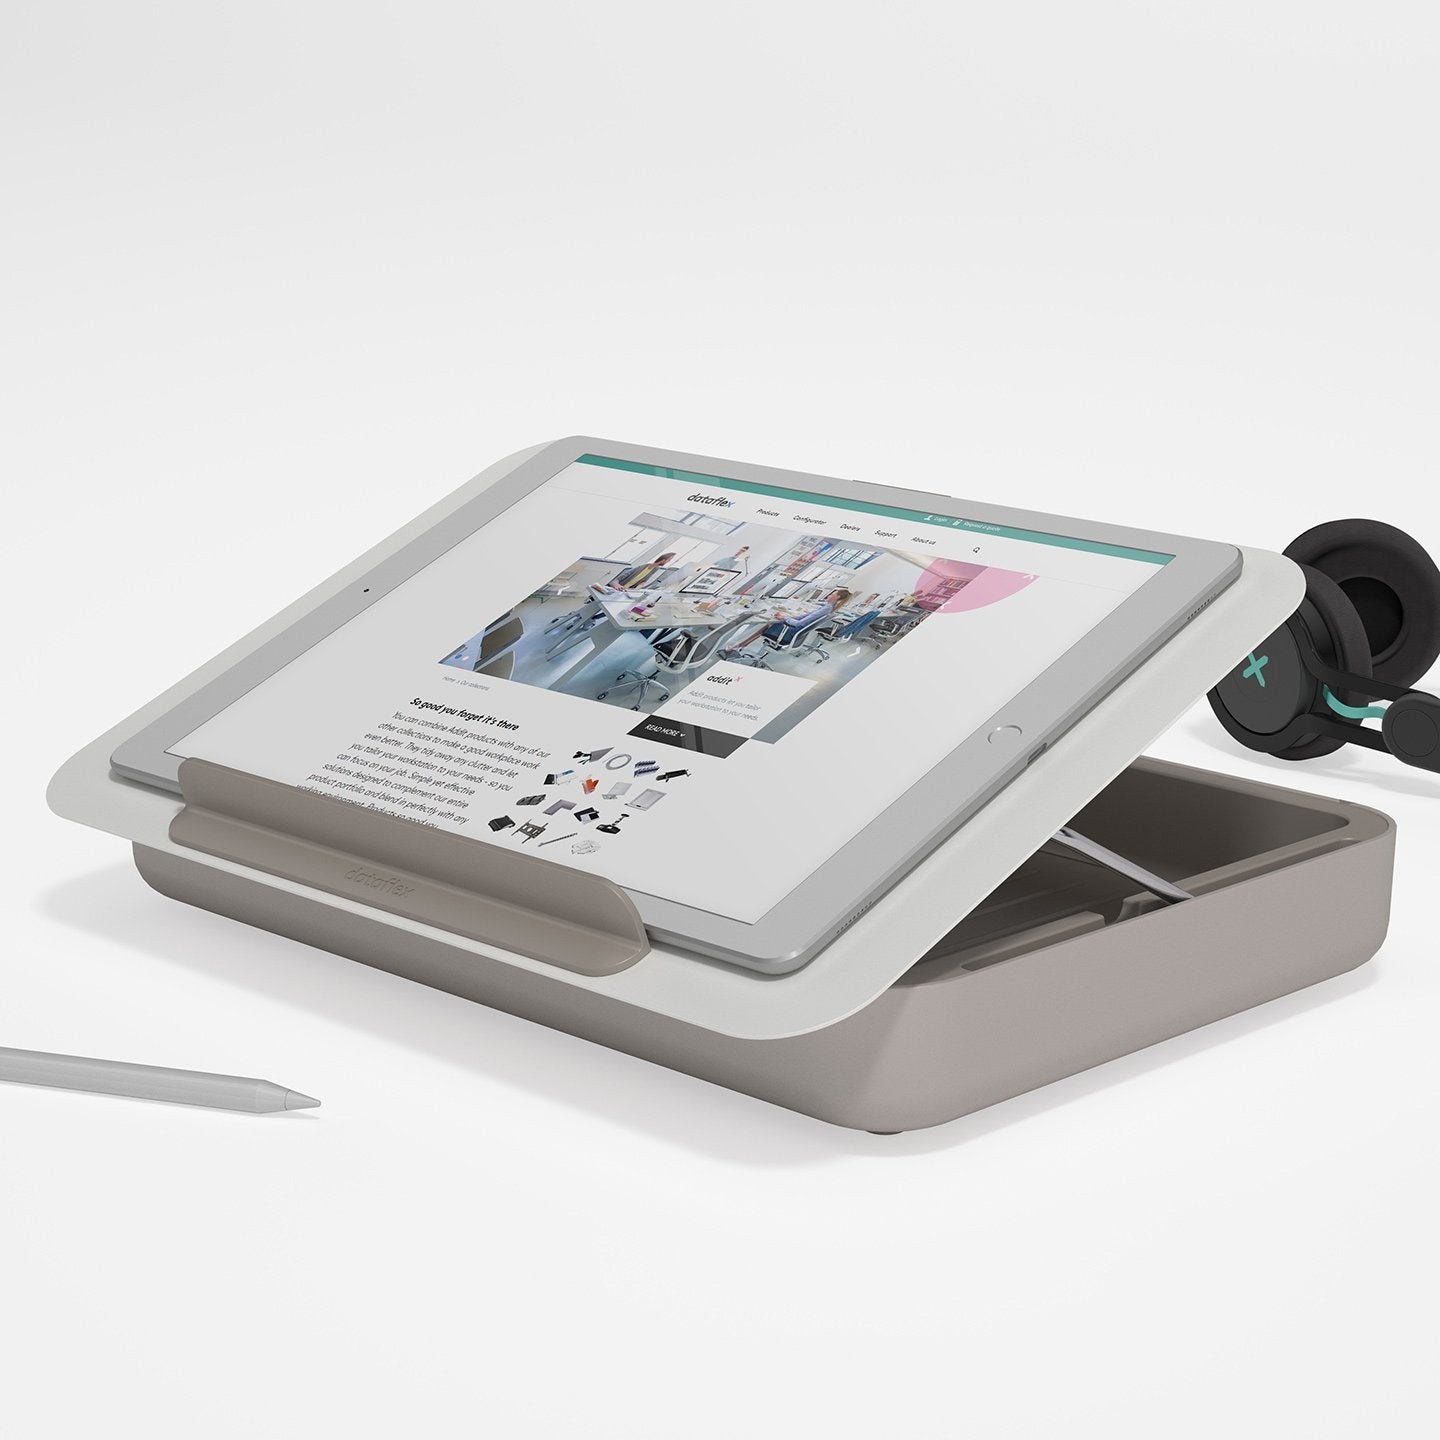 Witte ergonomische toolbox met geplaatste ipad uit de Addit Bento® collectie van Dataflex